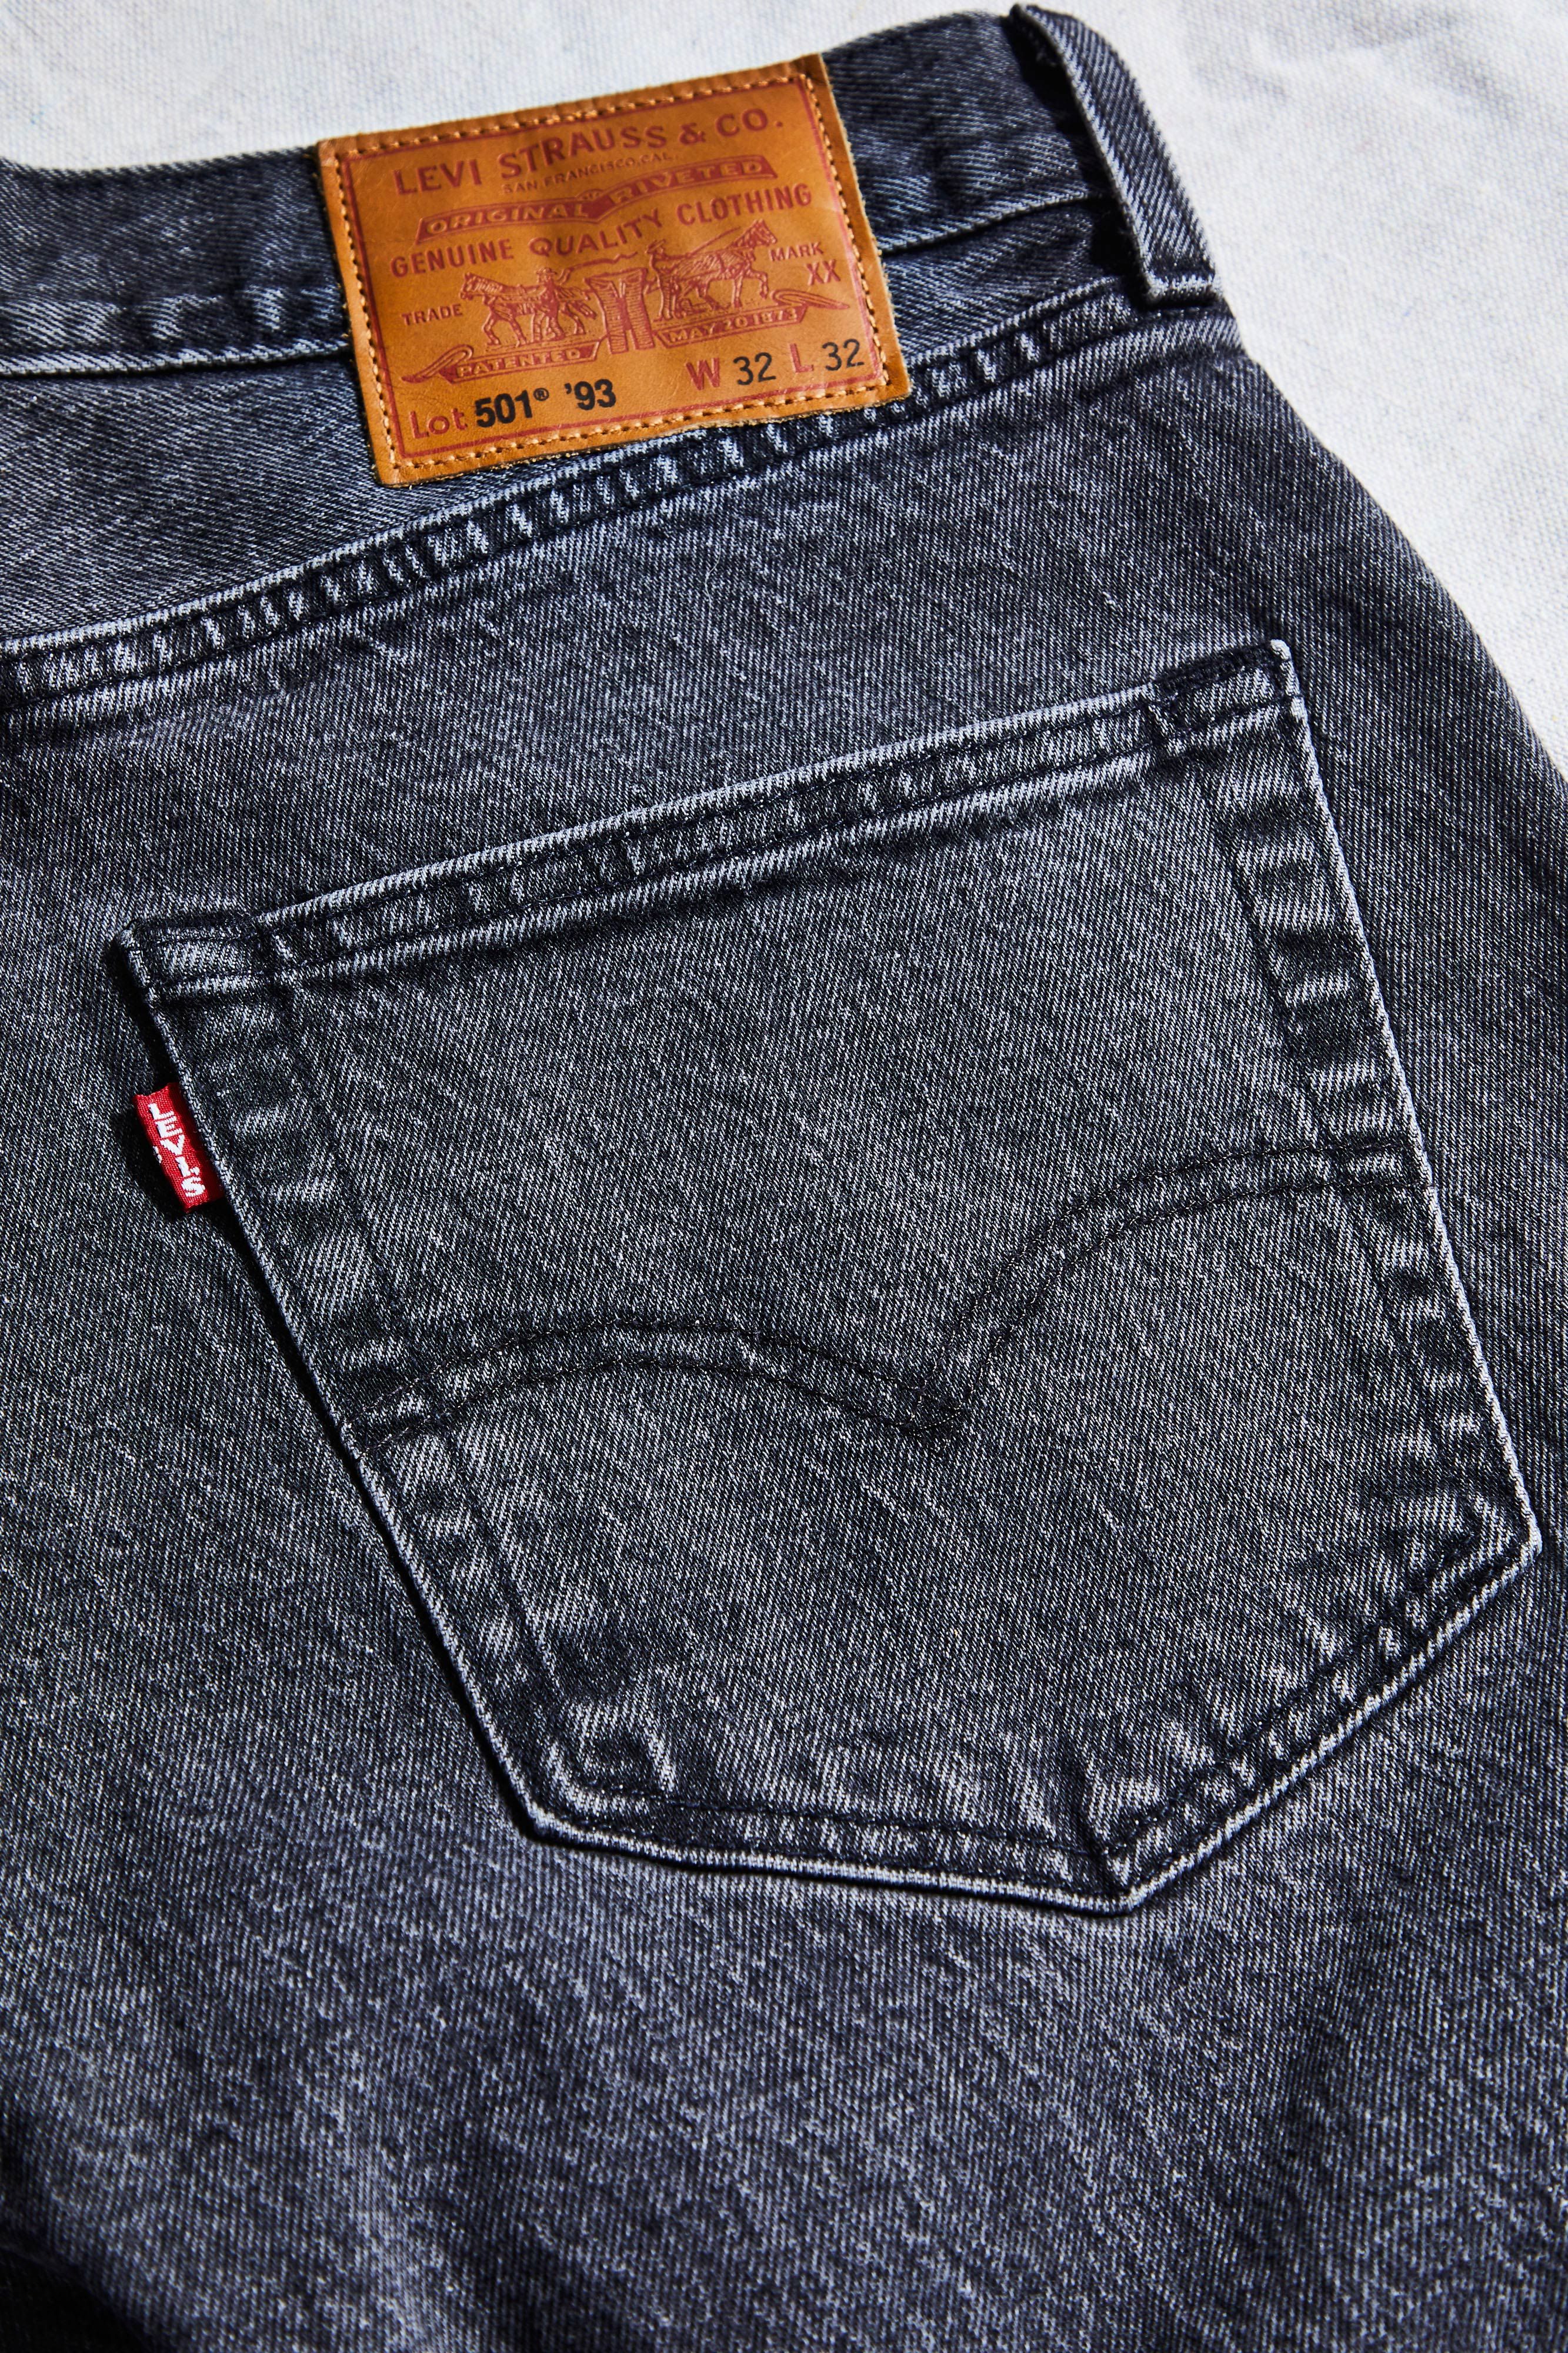 præambel Køb Andesbjergene Levi's 501 '93 Jeans Review and Endorsement